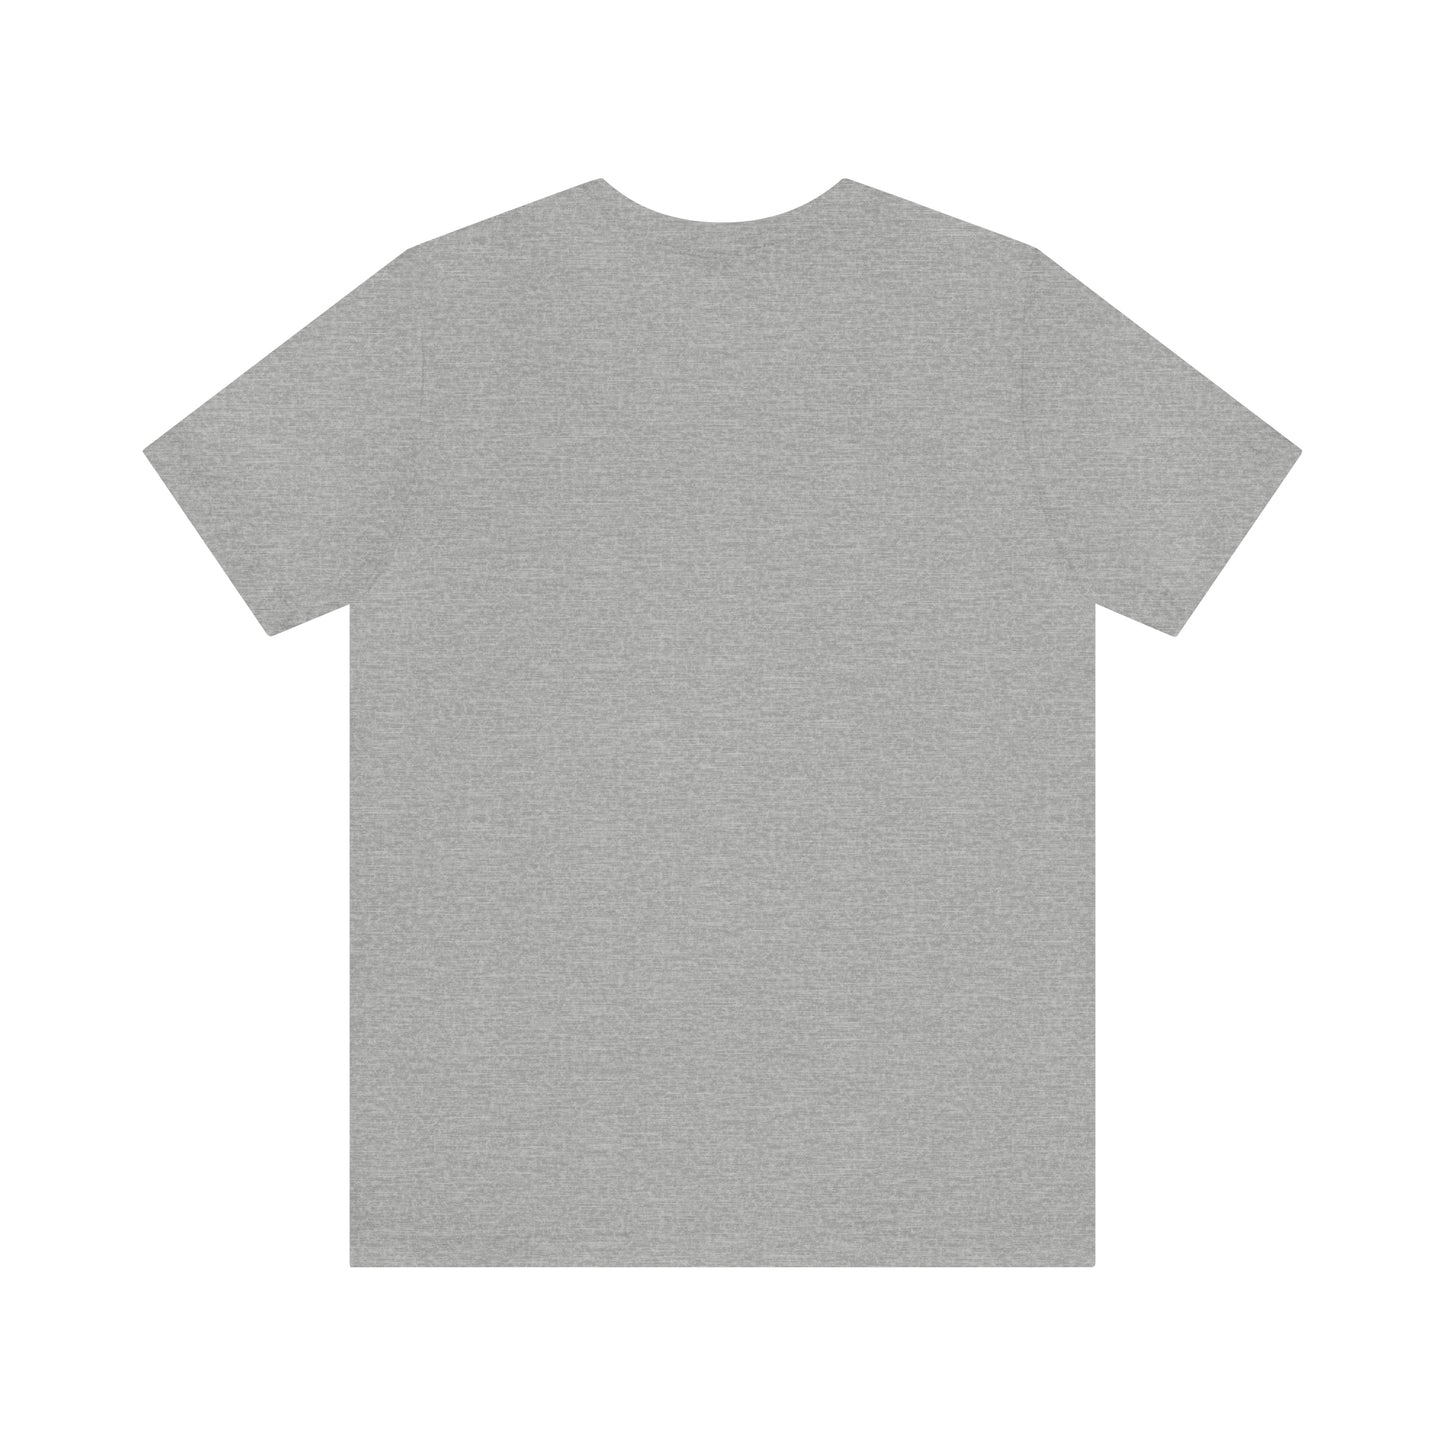 Harmon Family Tree Shirt (Teal / Gray)